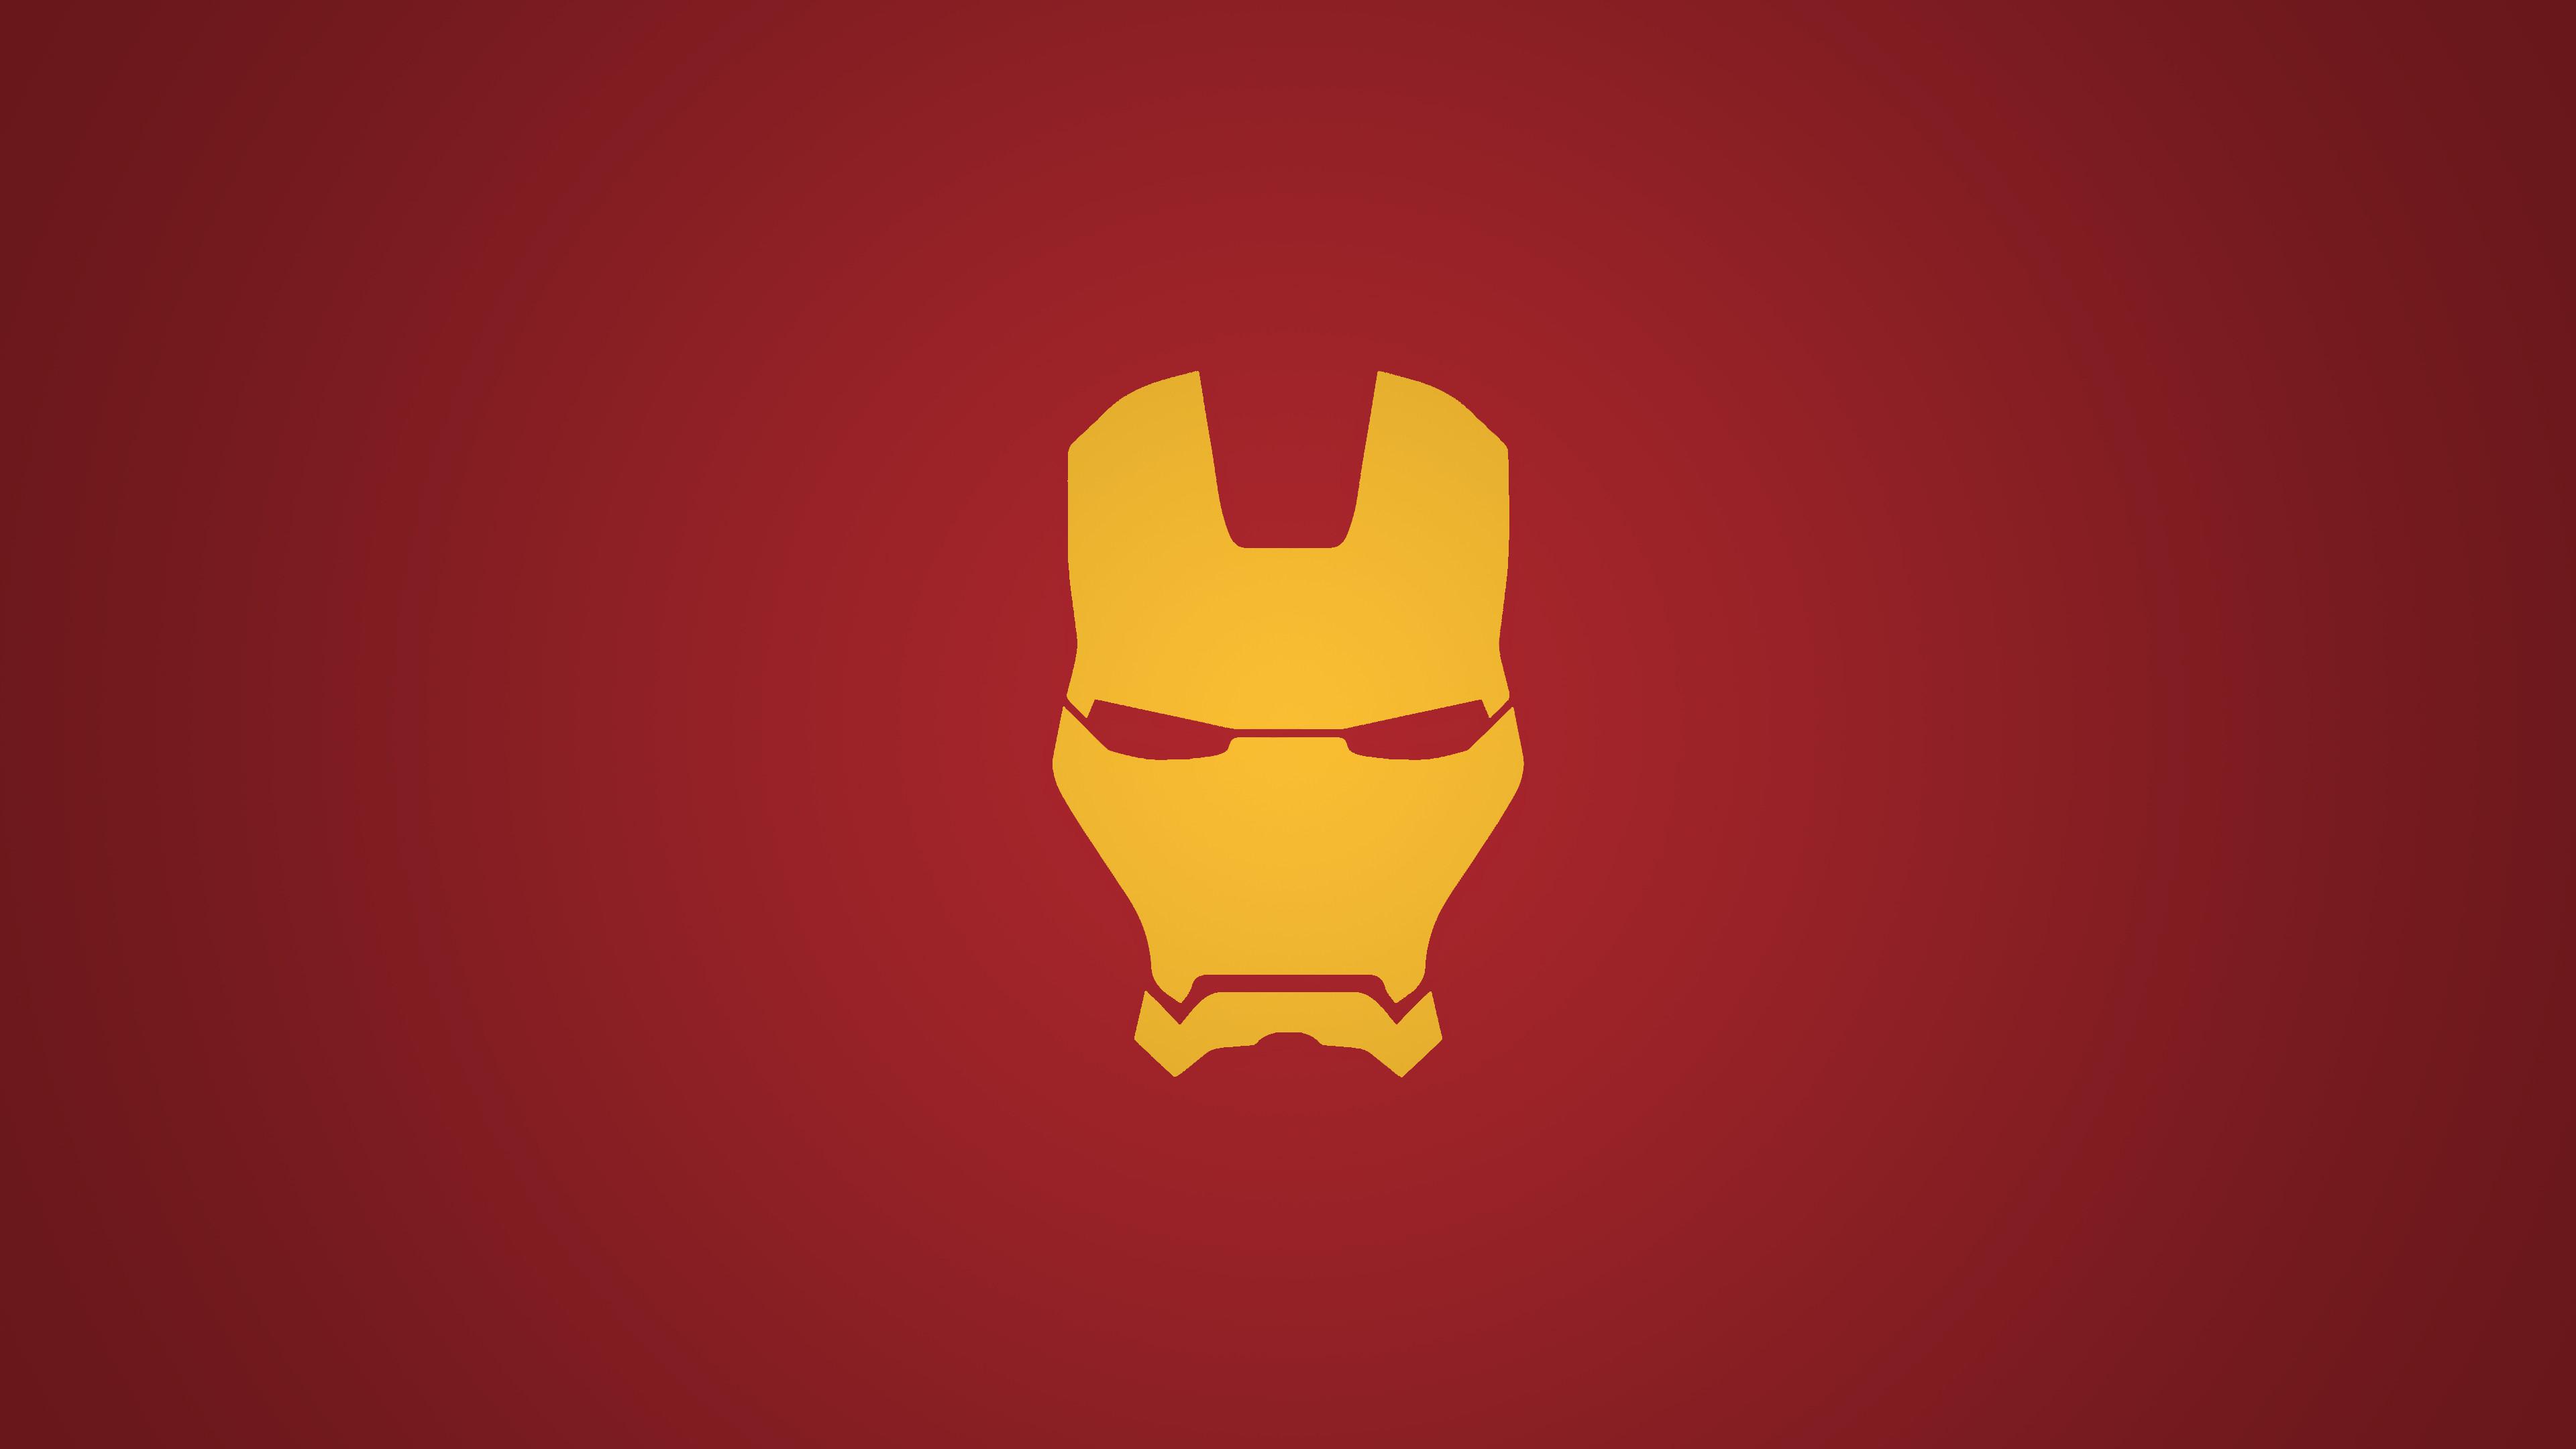 Iron Man Helmet Wallpapers - Wallpaper Cave